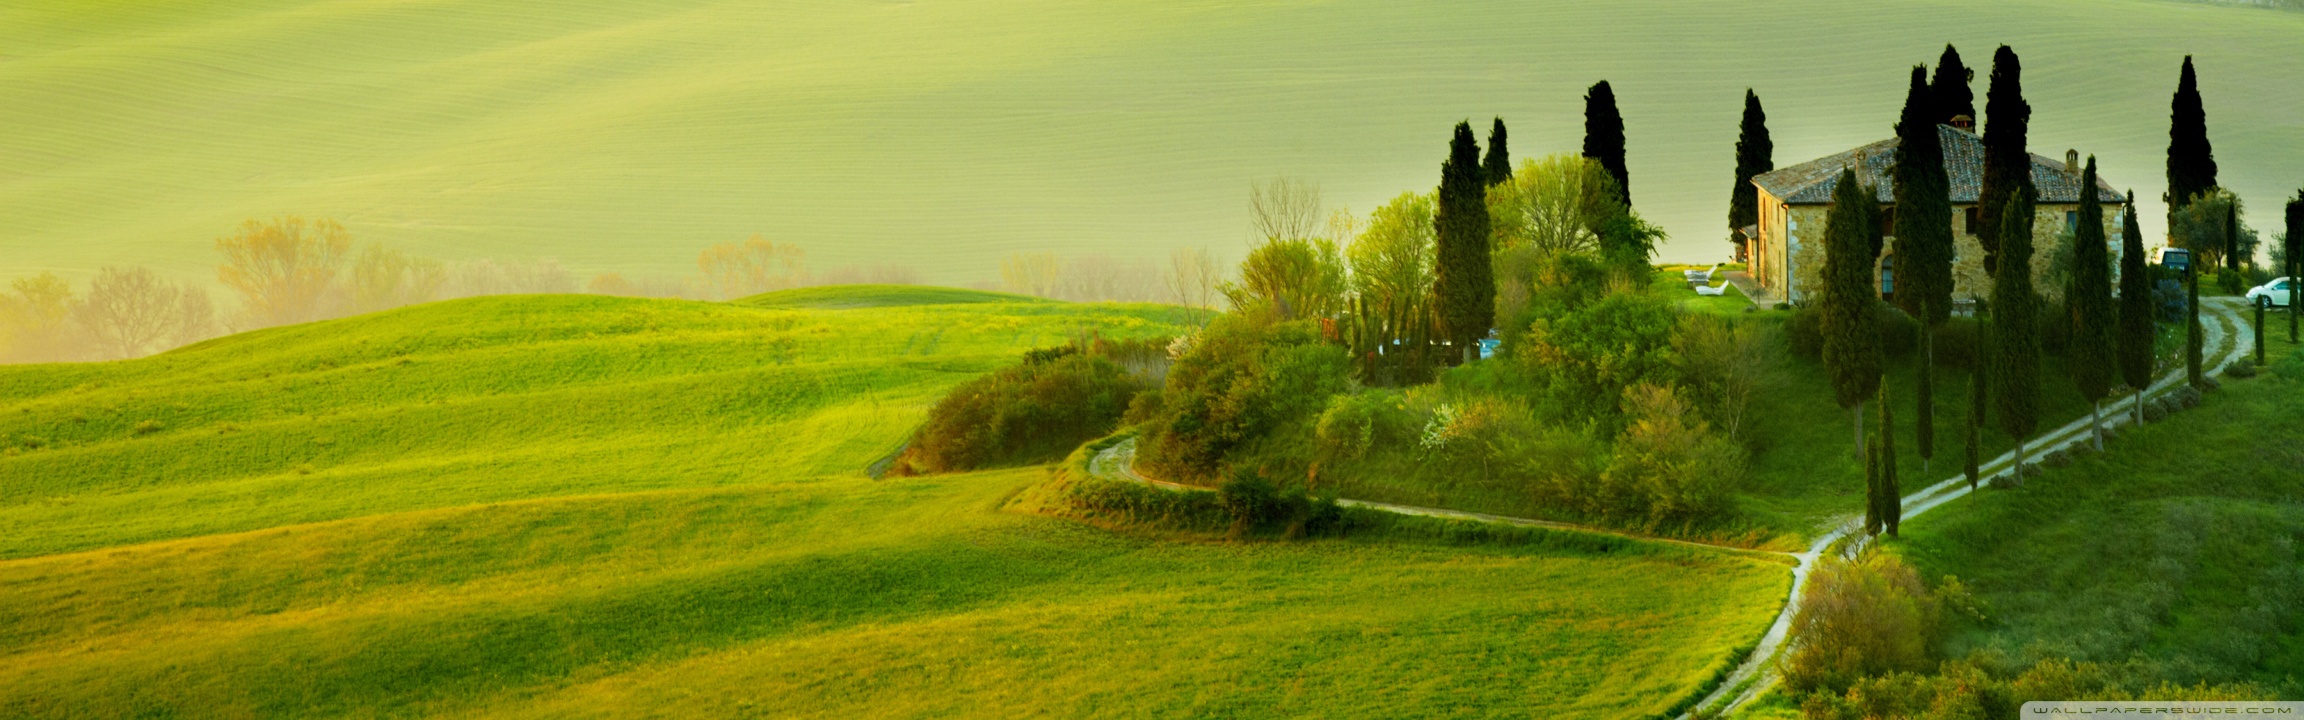 Tuscany Spring Landscape Ultra HD Desktop Background Wallpaper for ...